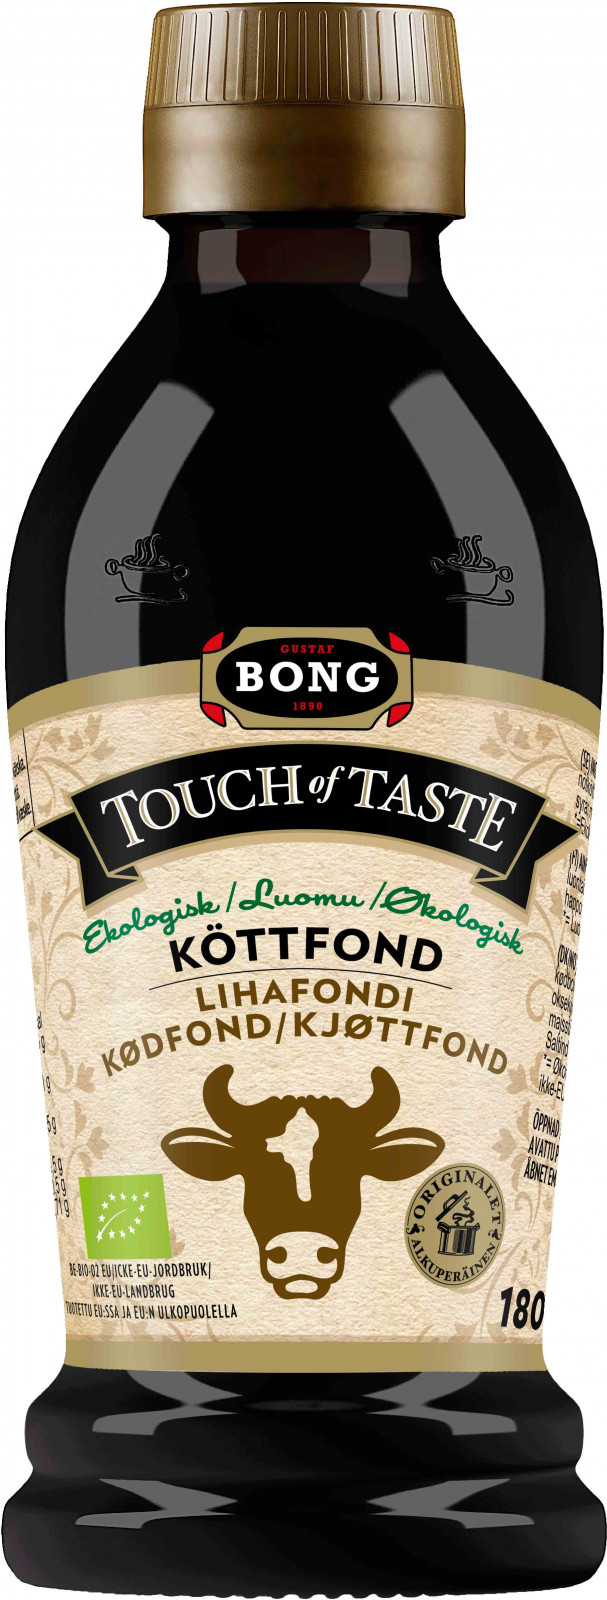 Bong touch of taste Tuottet Luomu Lihafondi